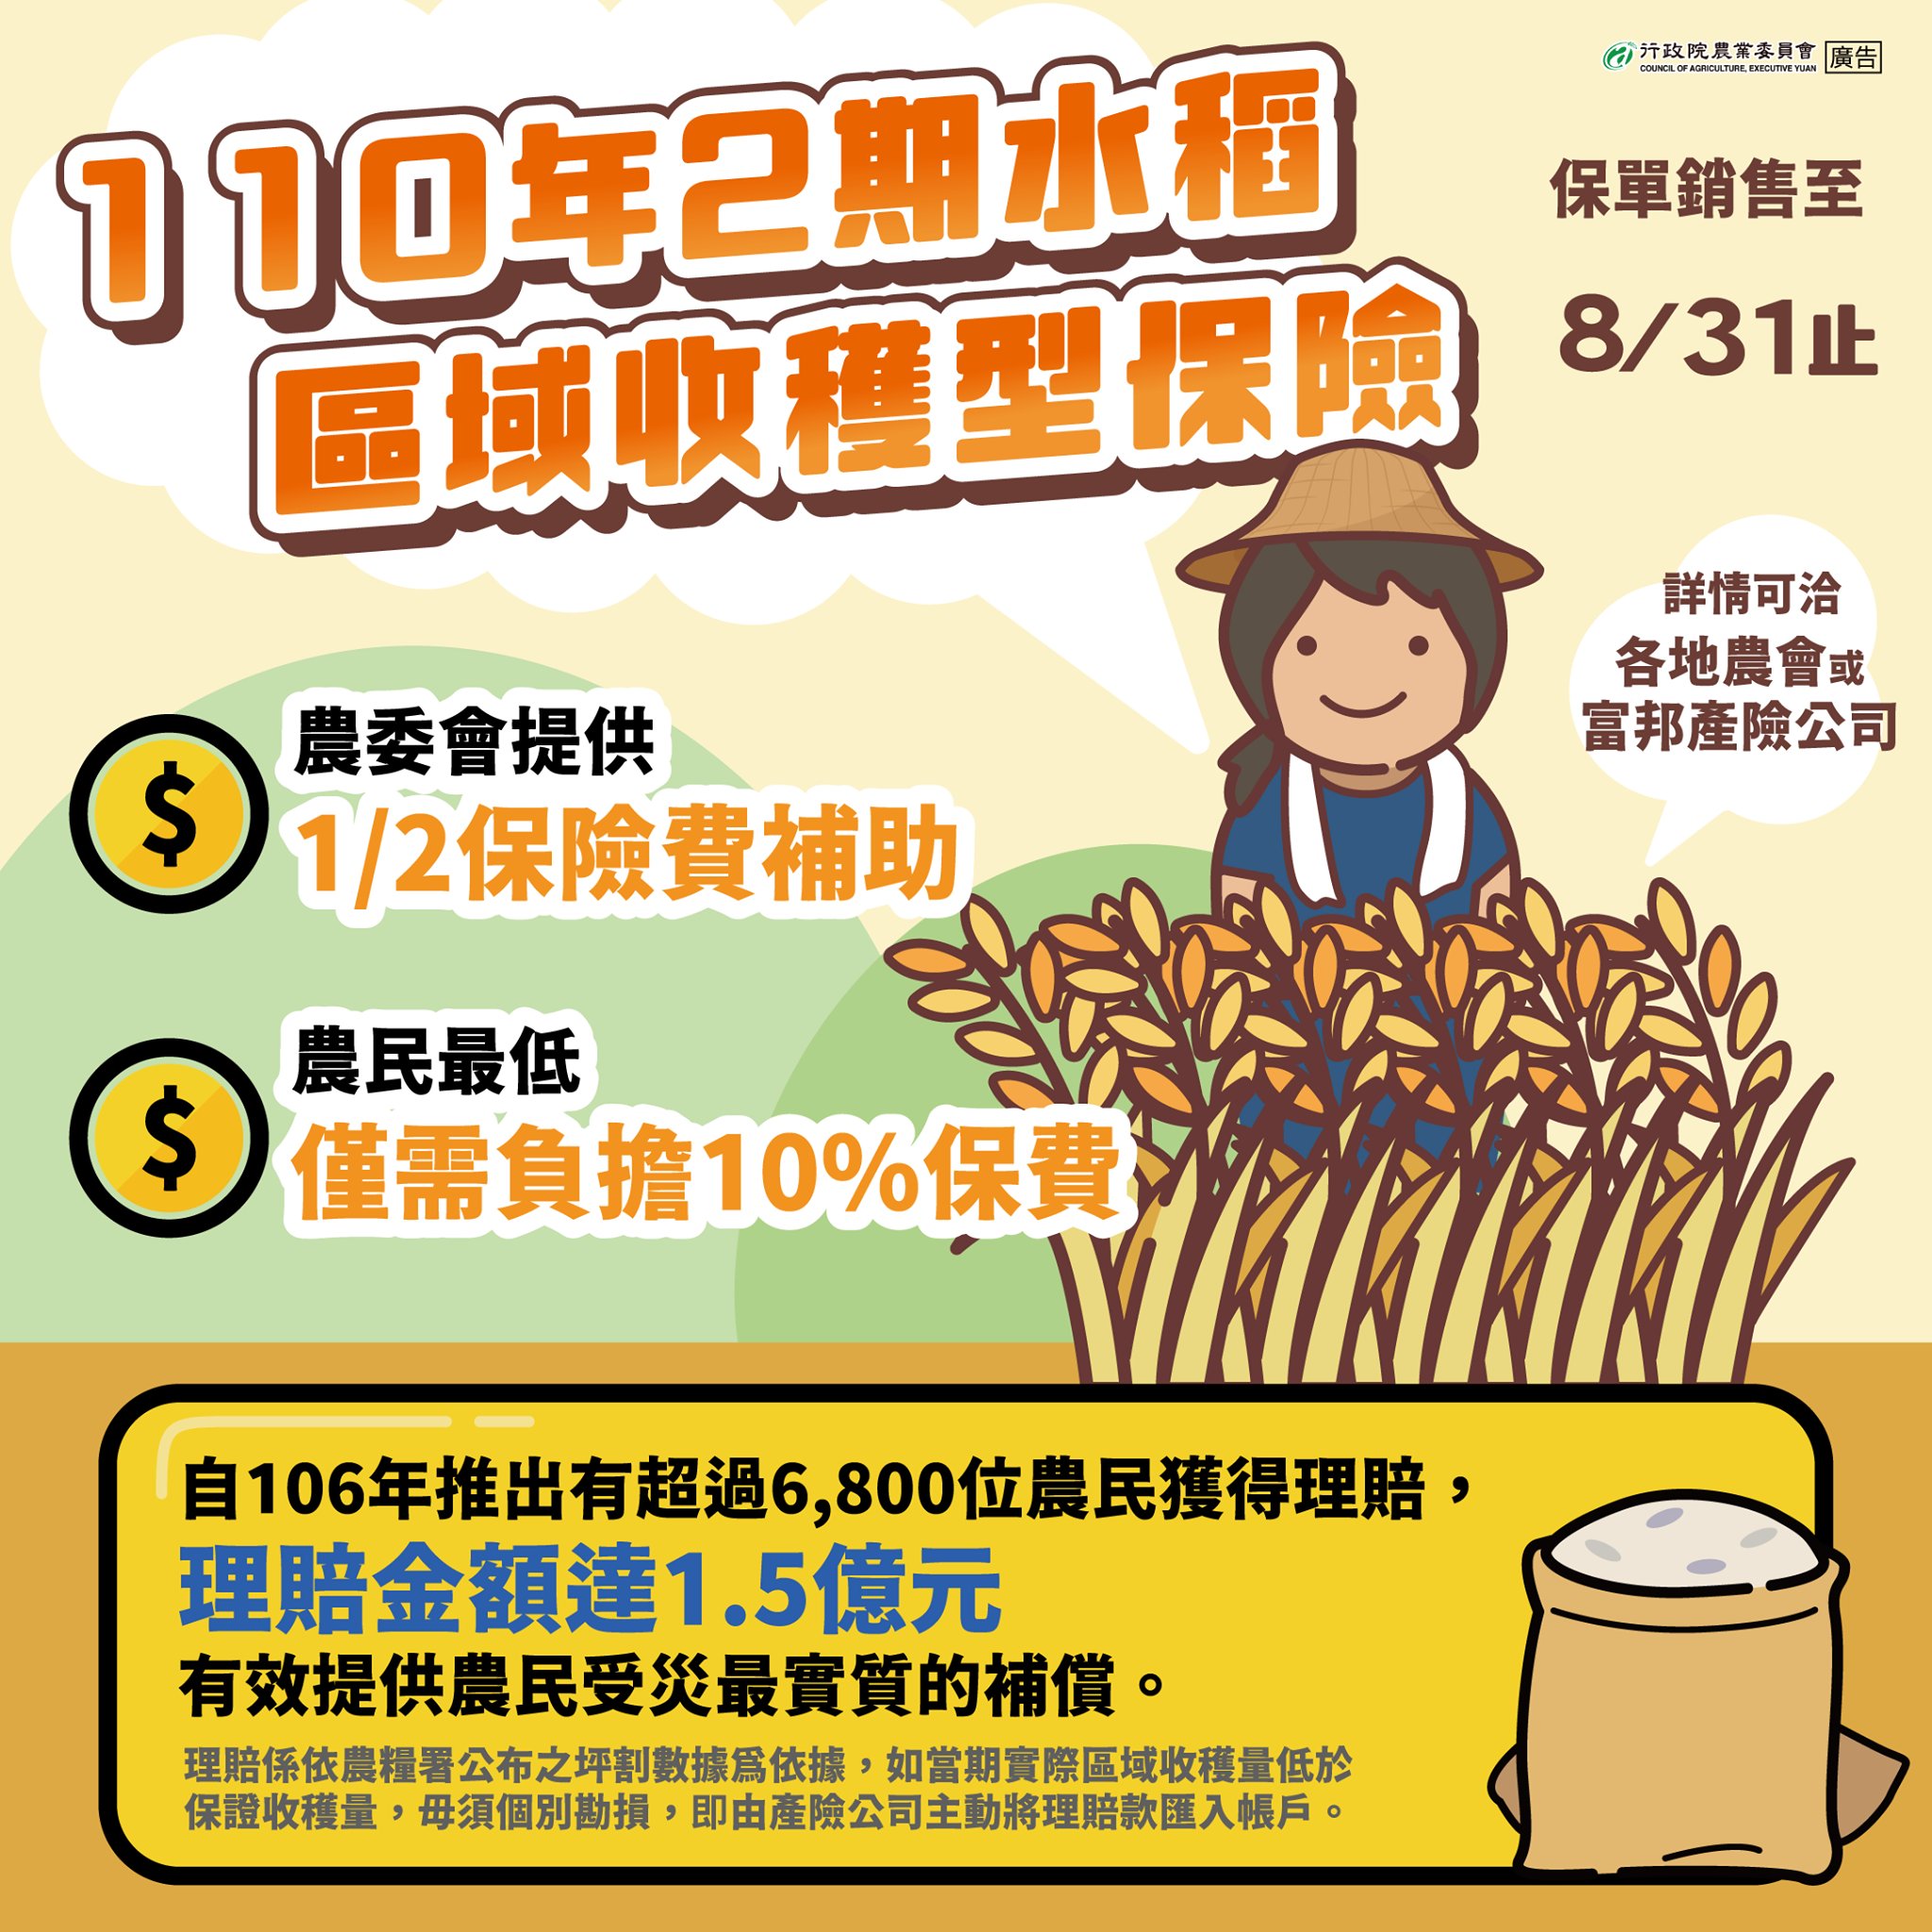 110年二期水稻保險開賣，銷售至8月31日止，歡迎踴躍投保